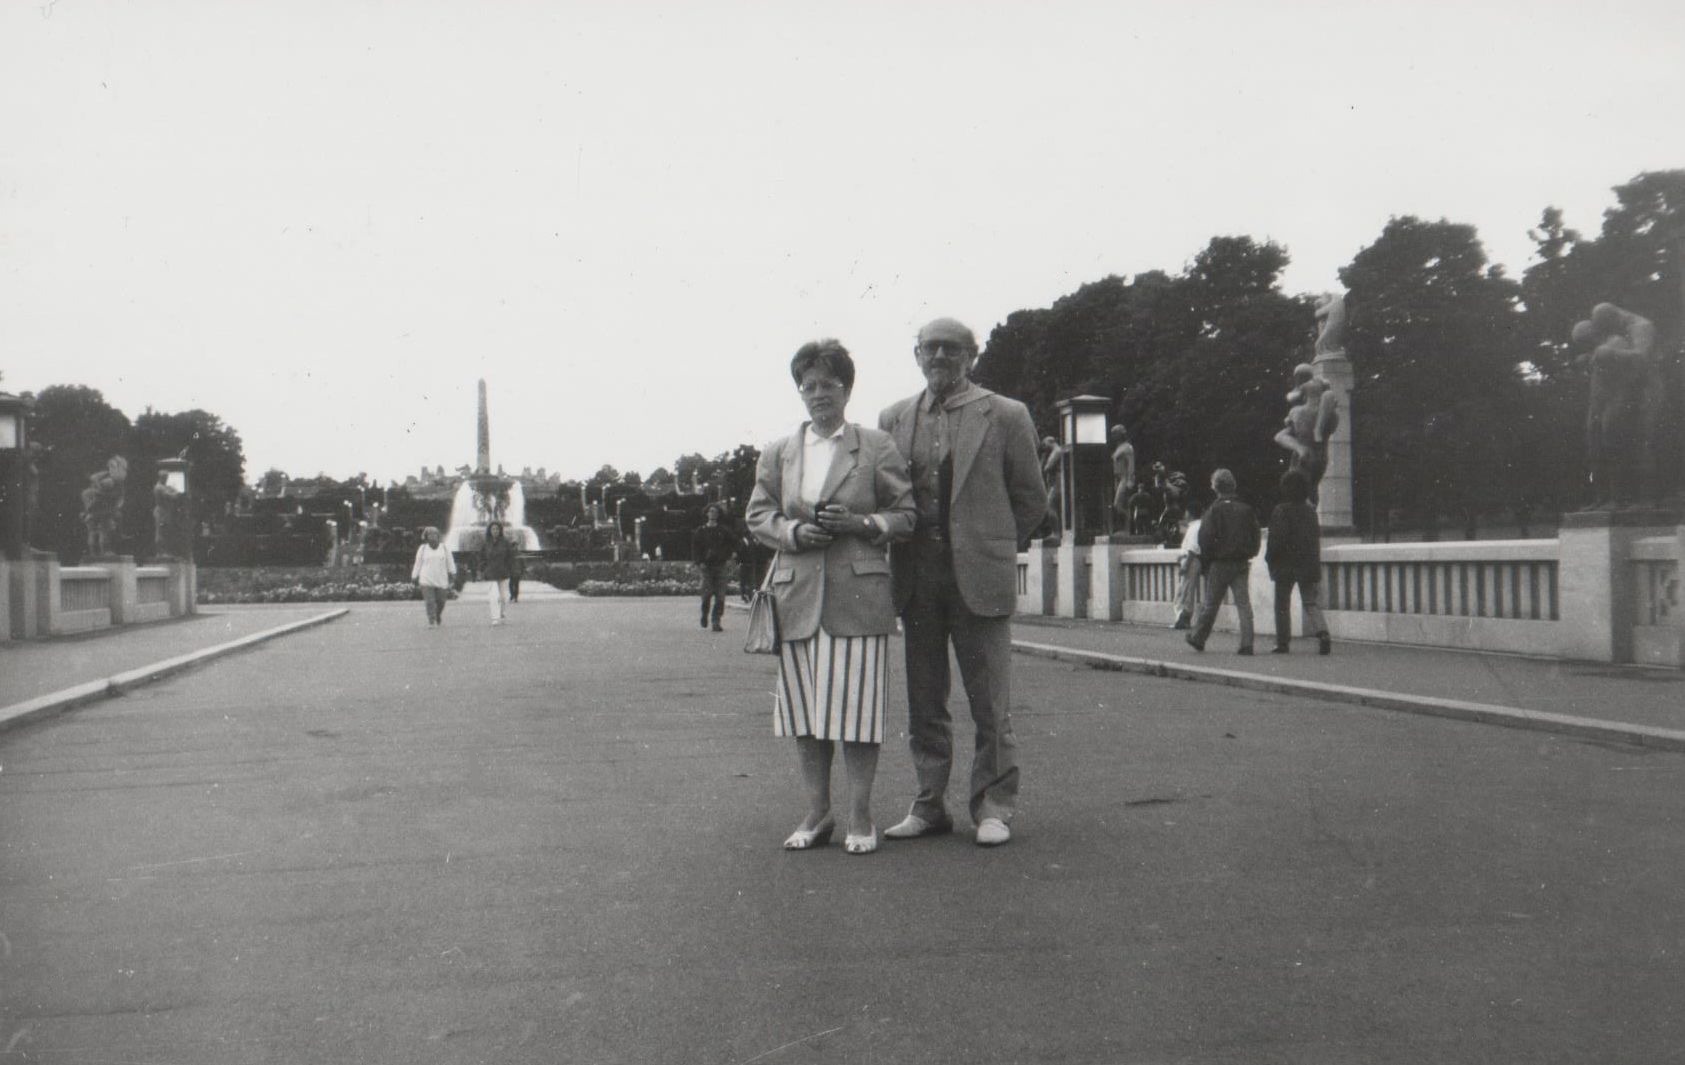 Su Latvijos centrinio valstybės archyvo direktore D. Kliavinia Osle, prie unikalaus G. Videlano parko. 1994 m. rugpjūčio 12 d.